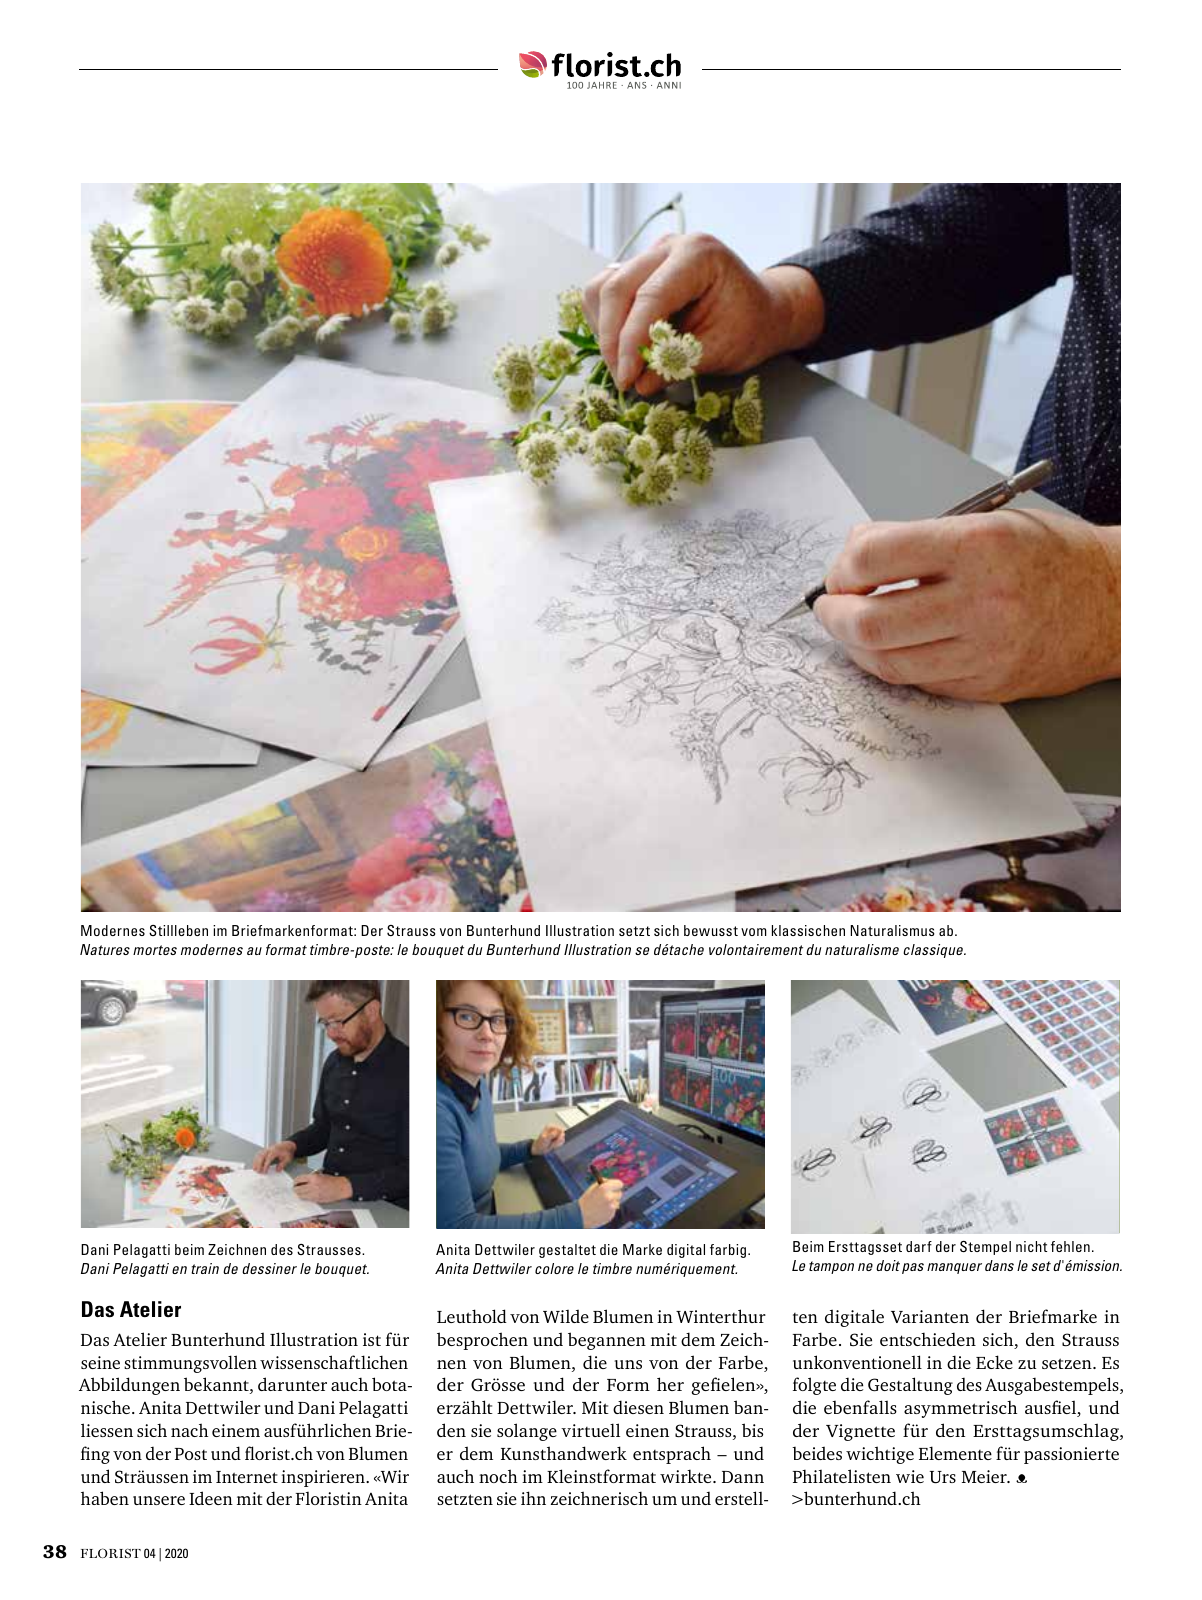 Vorschau Florist - Ausgabe April 2020 Seite 36